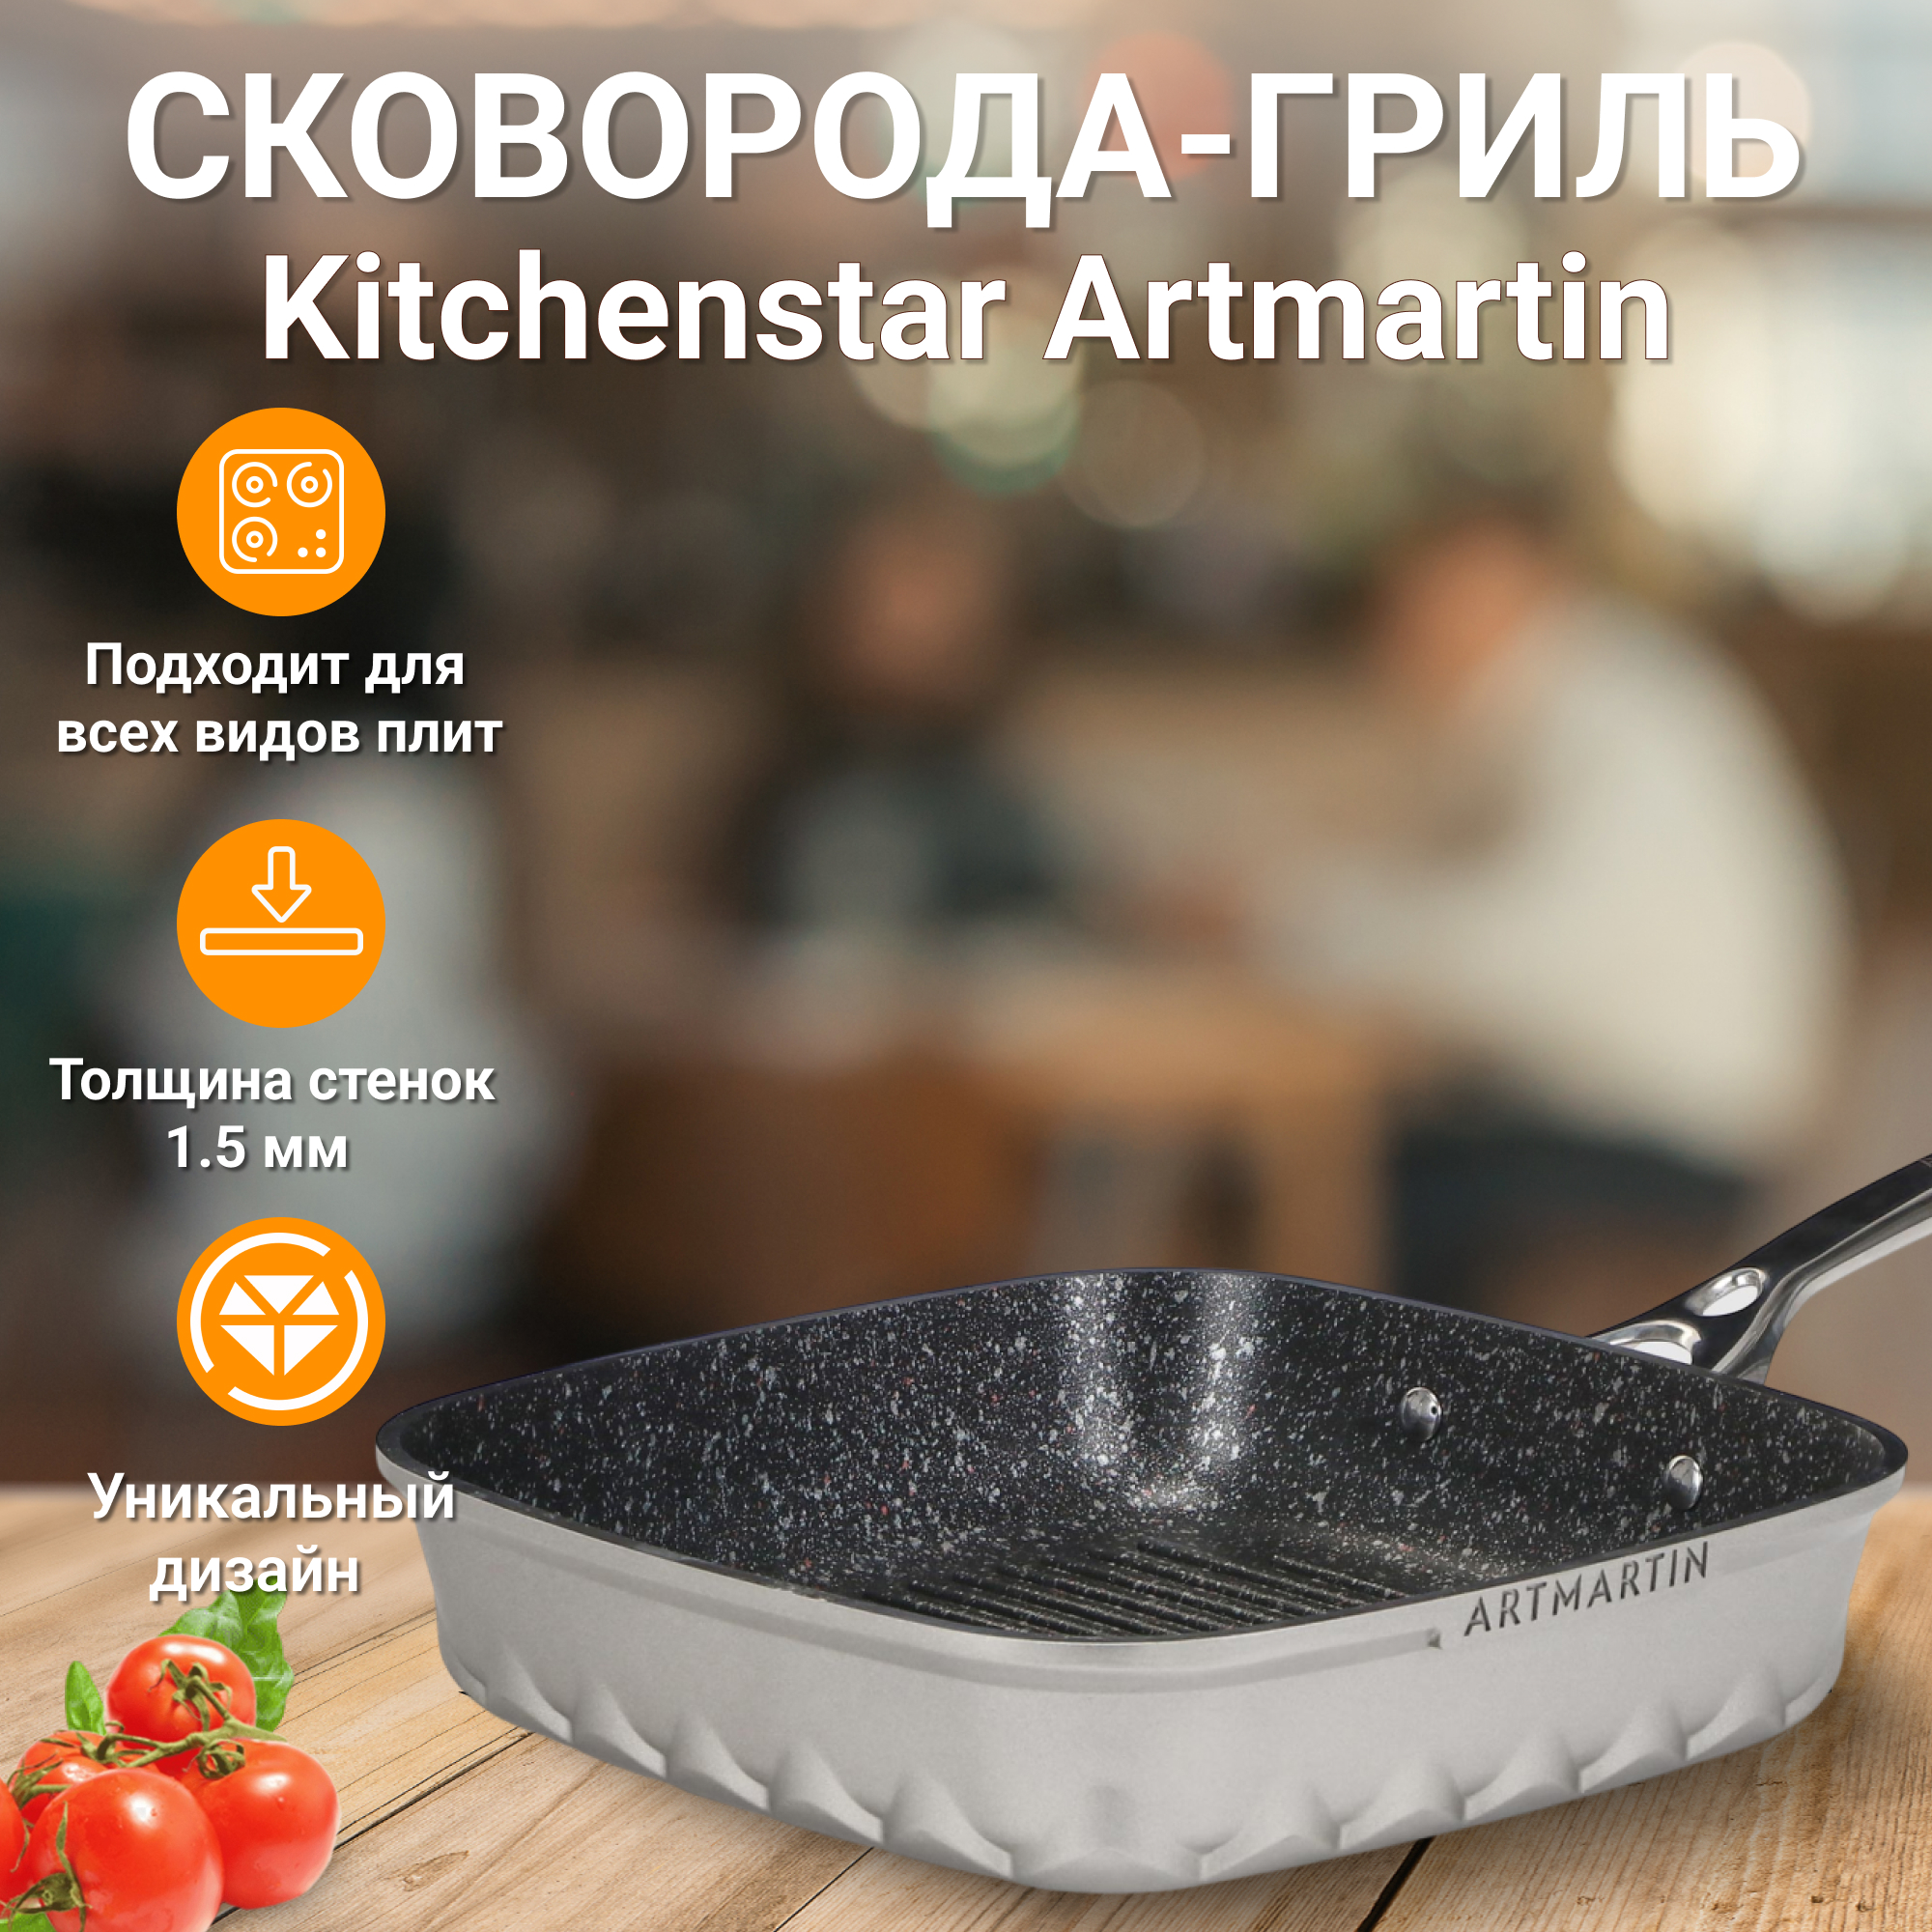 Сковорода-гриль Kitchen star Artmartin 26 см, цвет серый - фото 2